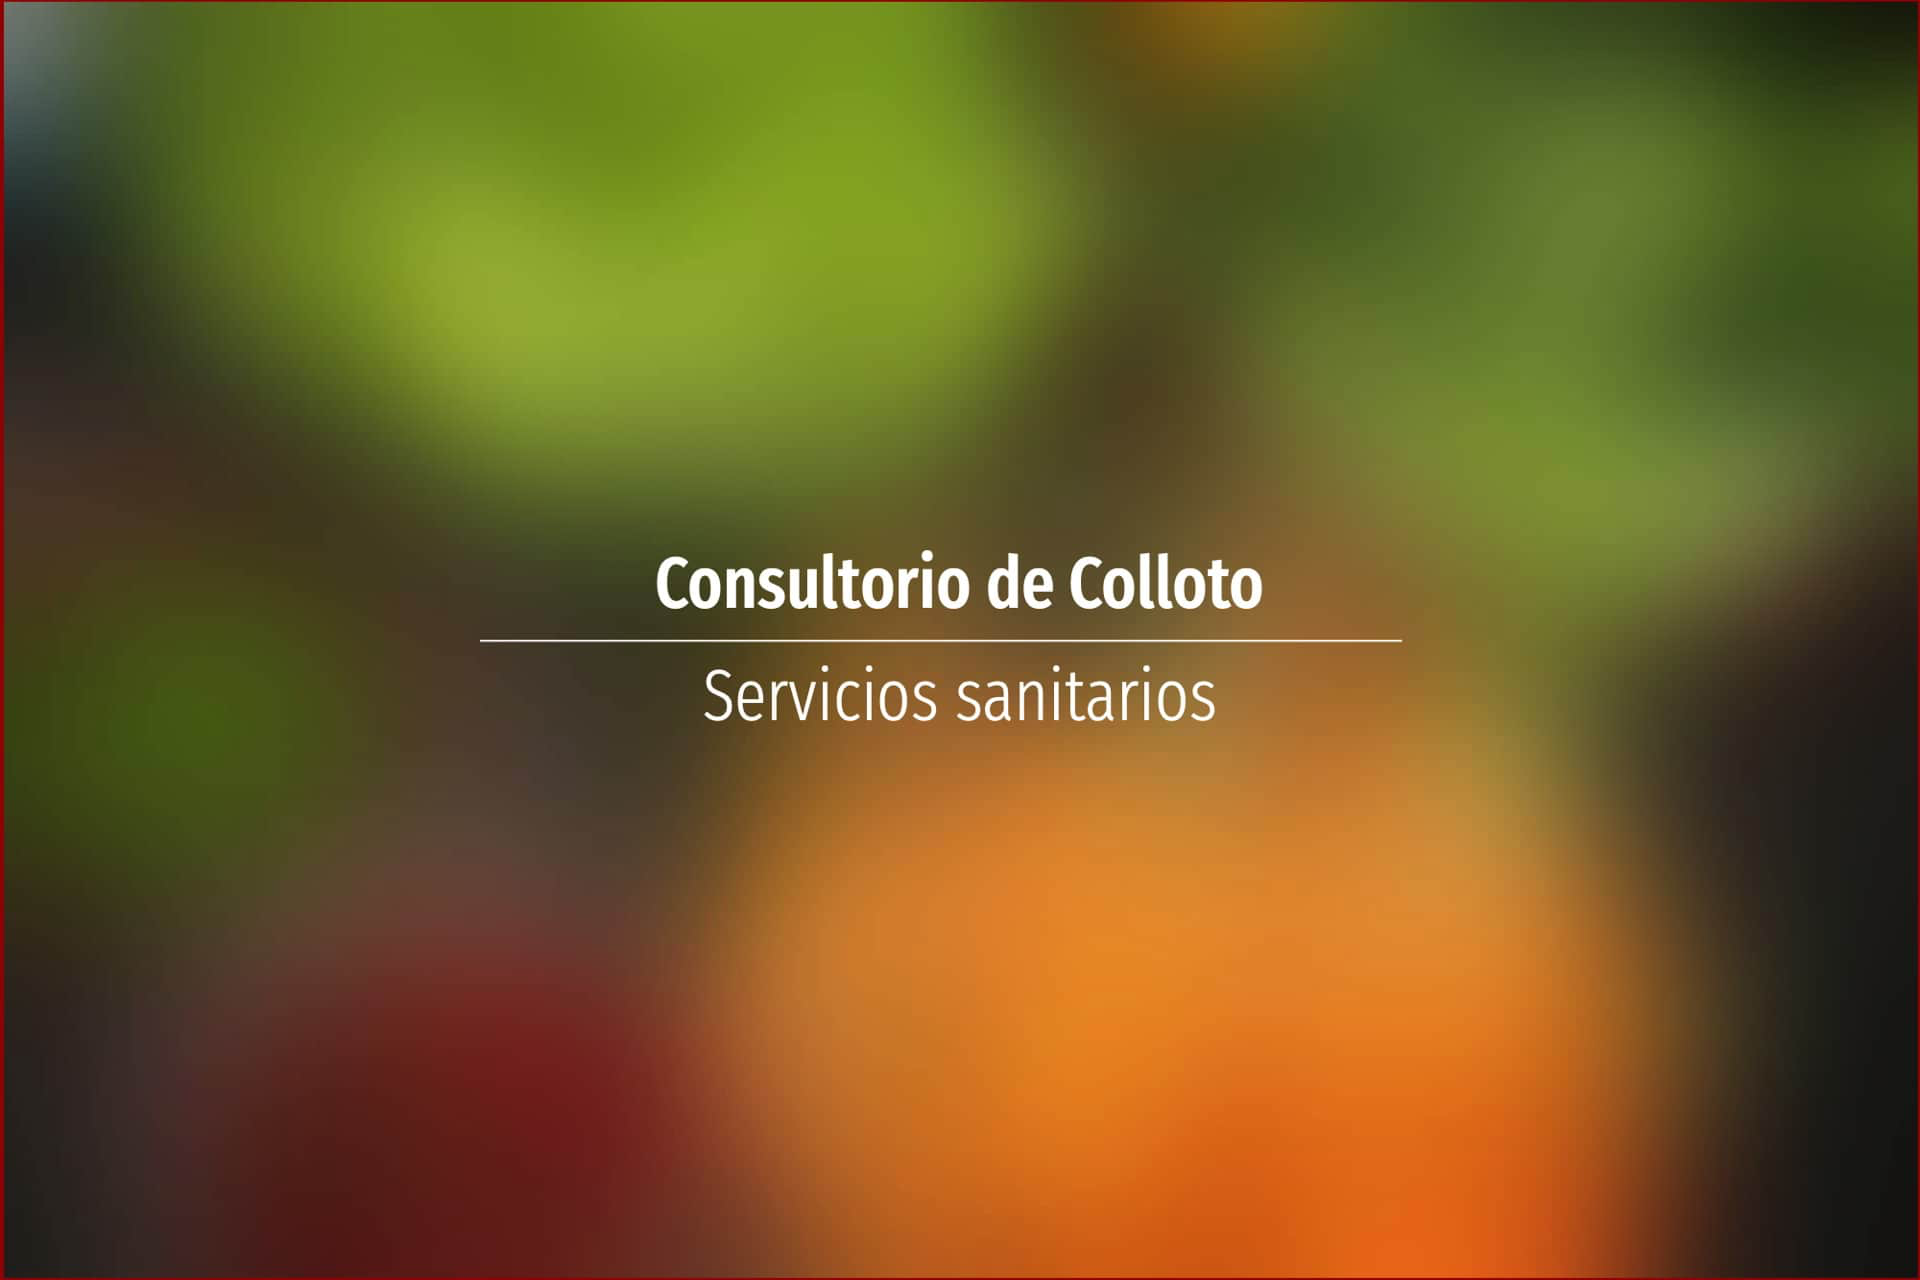 Consultorio de Colloto